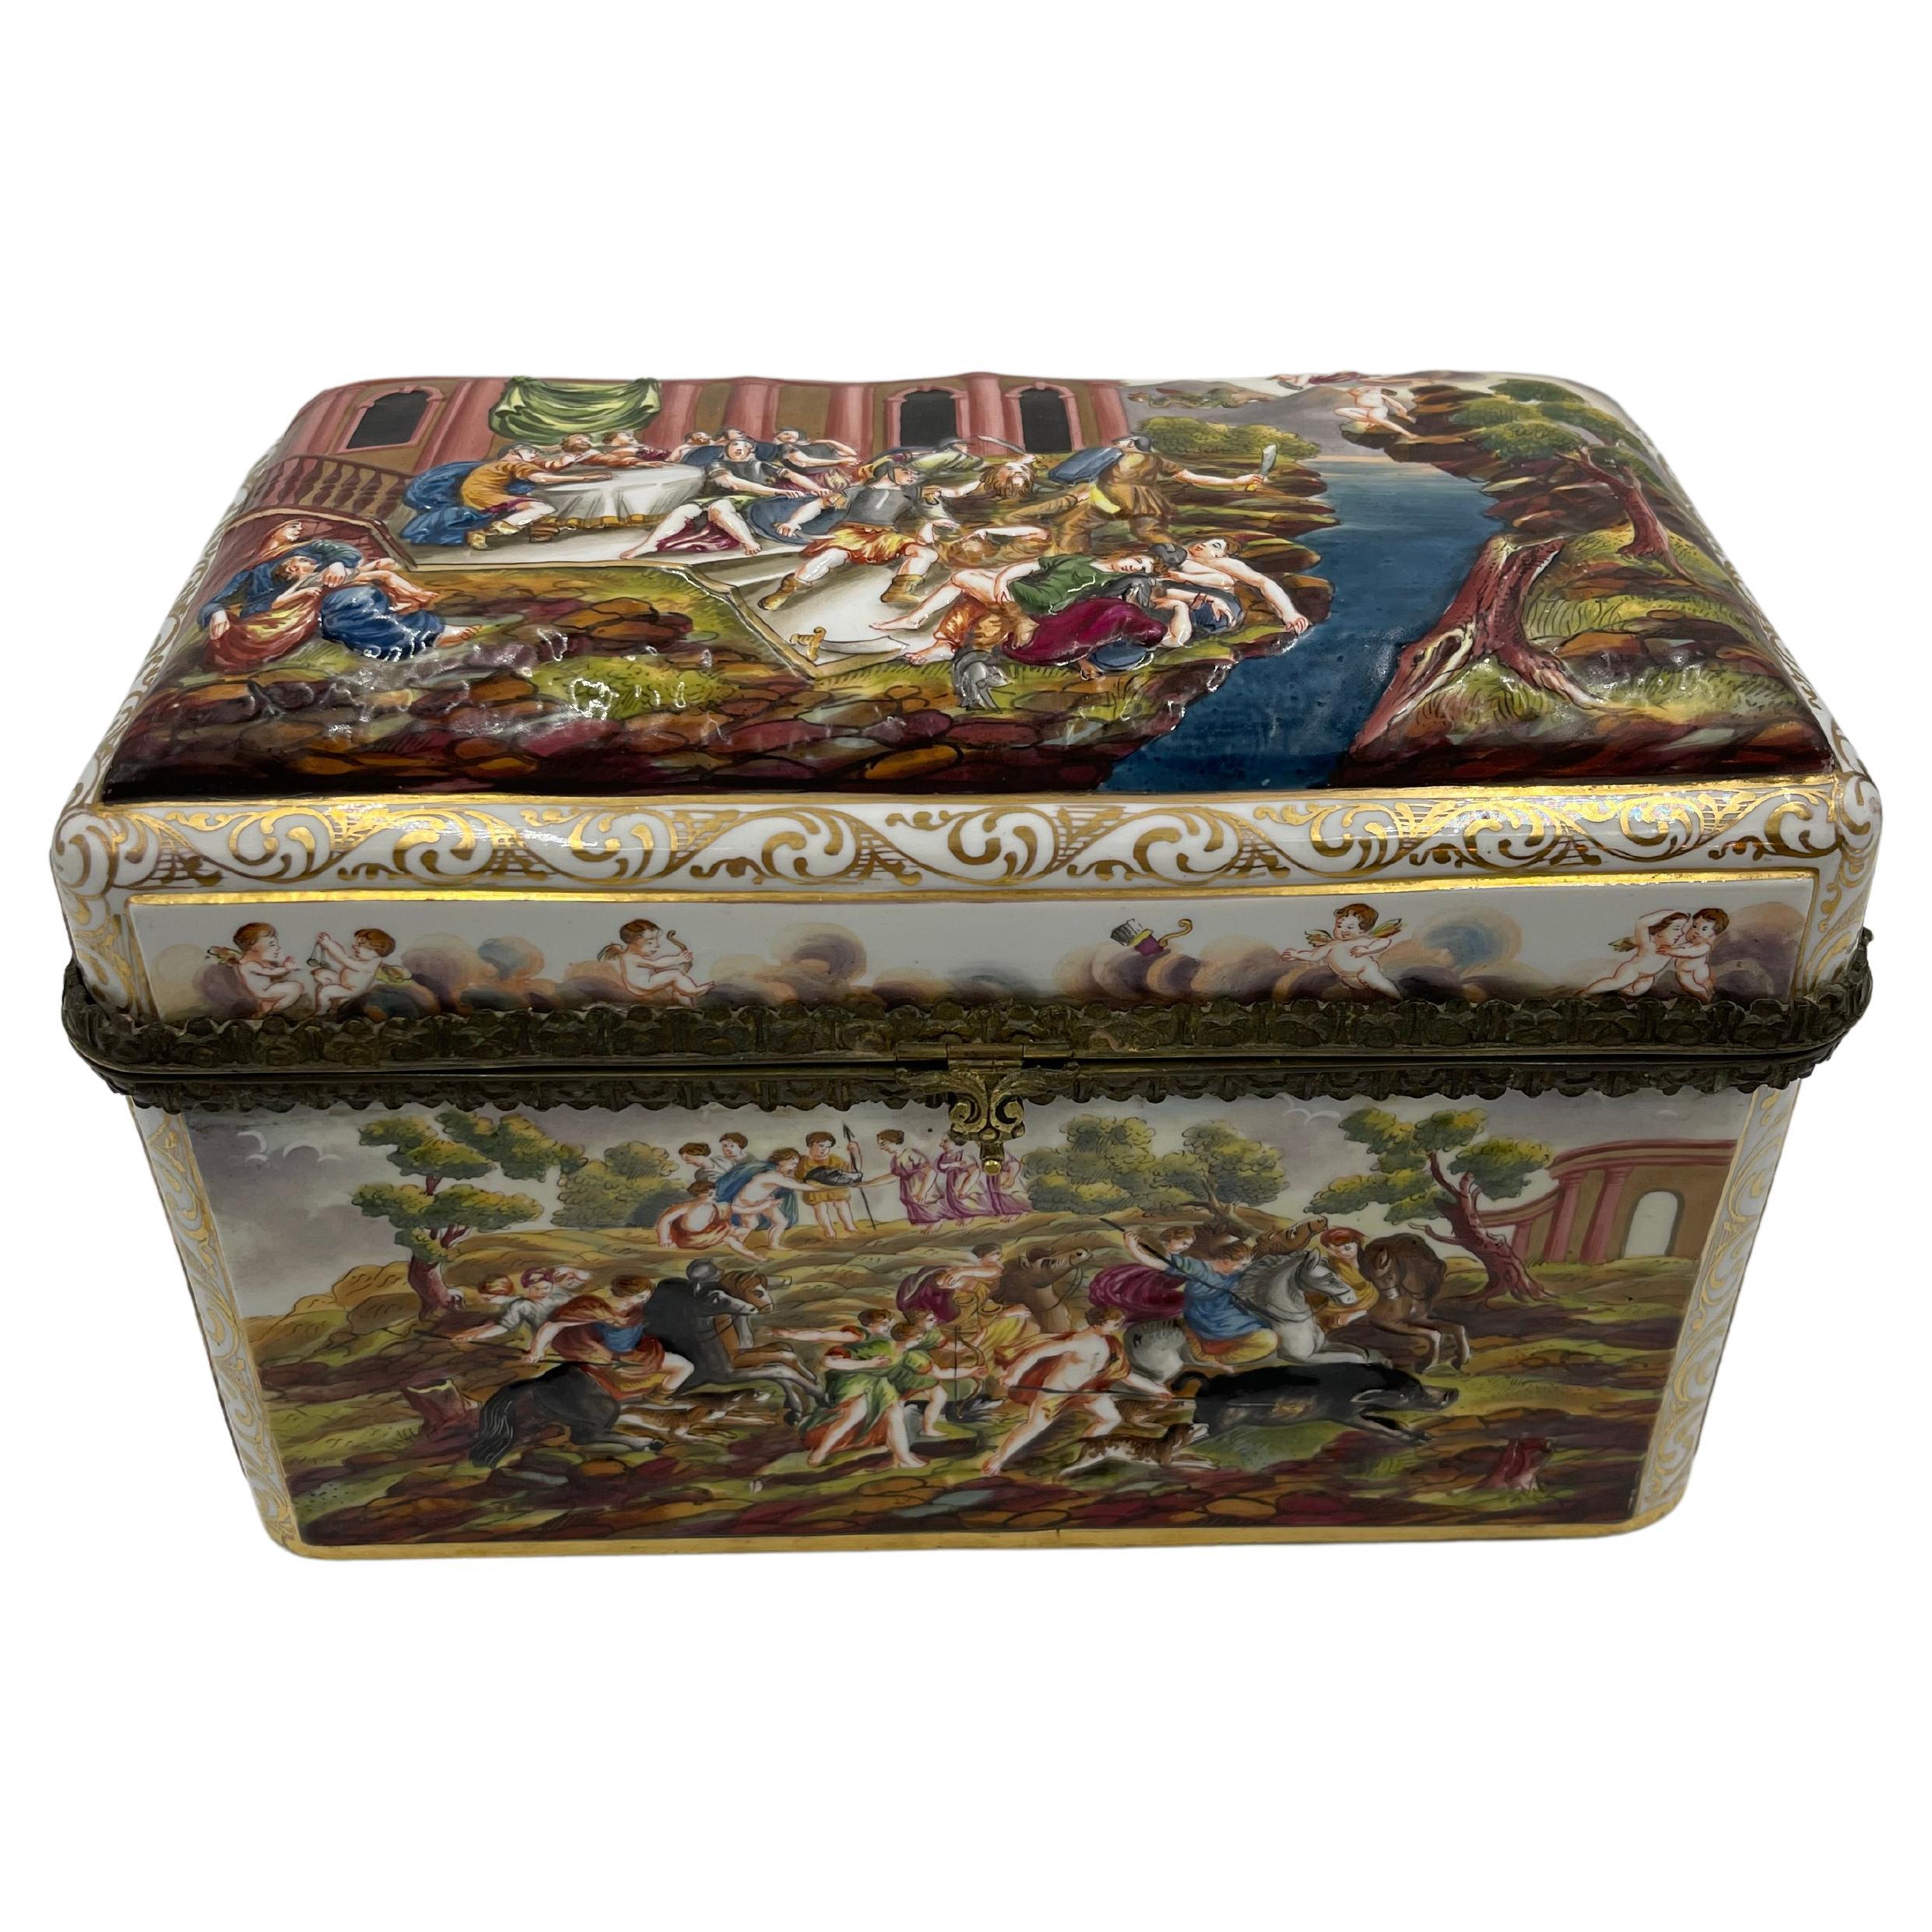 Rare Large 19th C. Capodimonte Porcelain Box / Table Casket For Sale